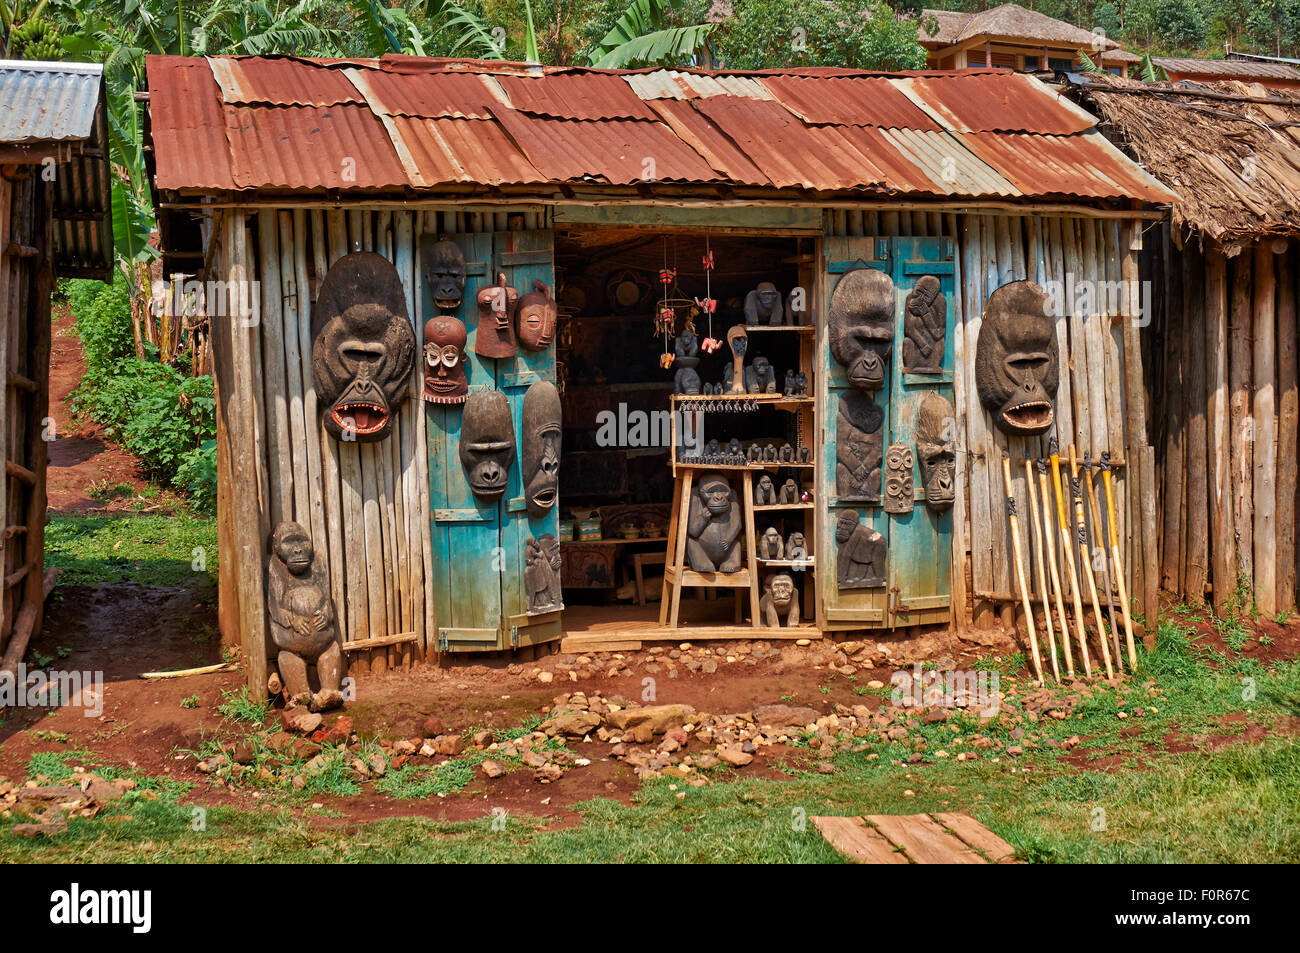 craft shop, Buhoma, Bwindi Impenetrable National Park, Uganda, Africa Stock Photo